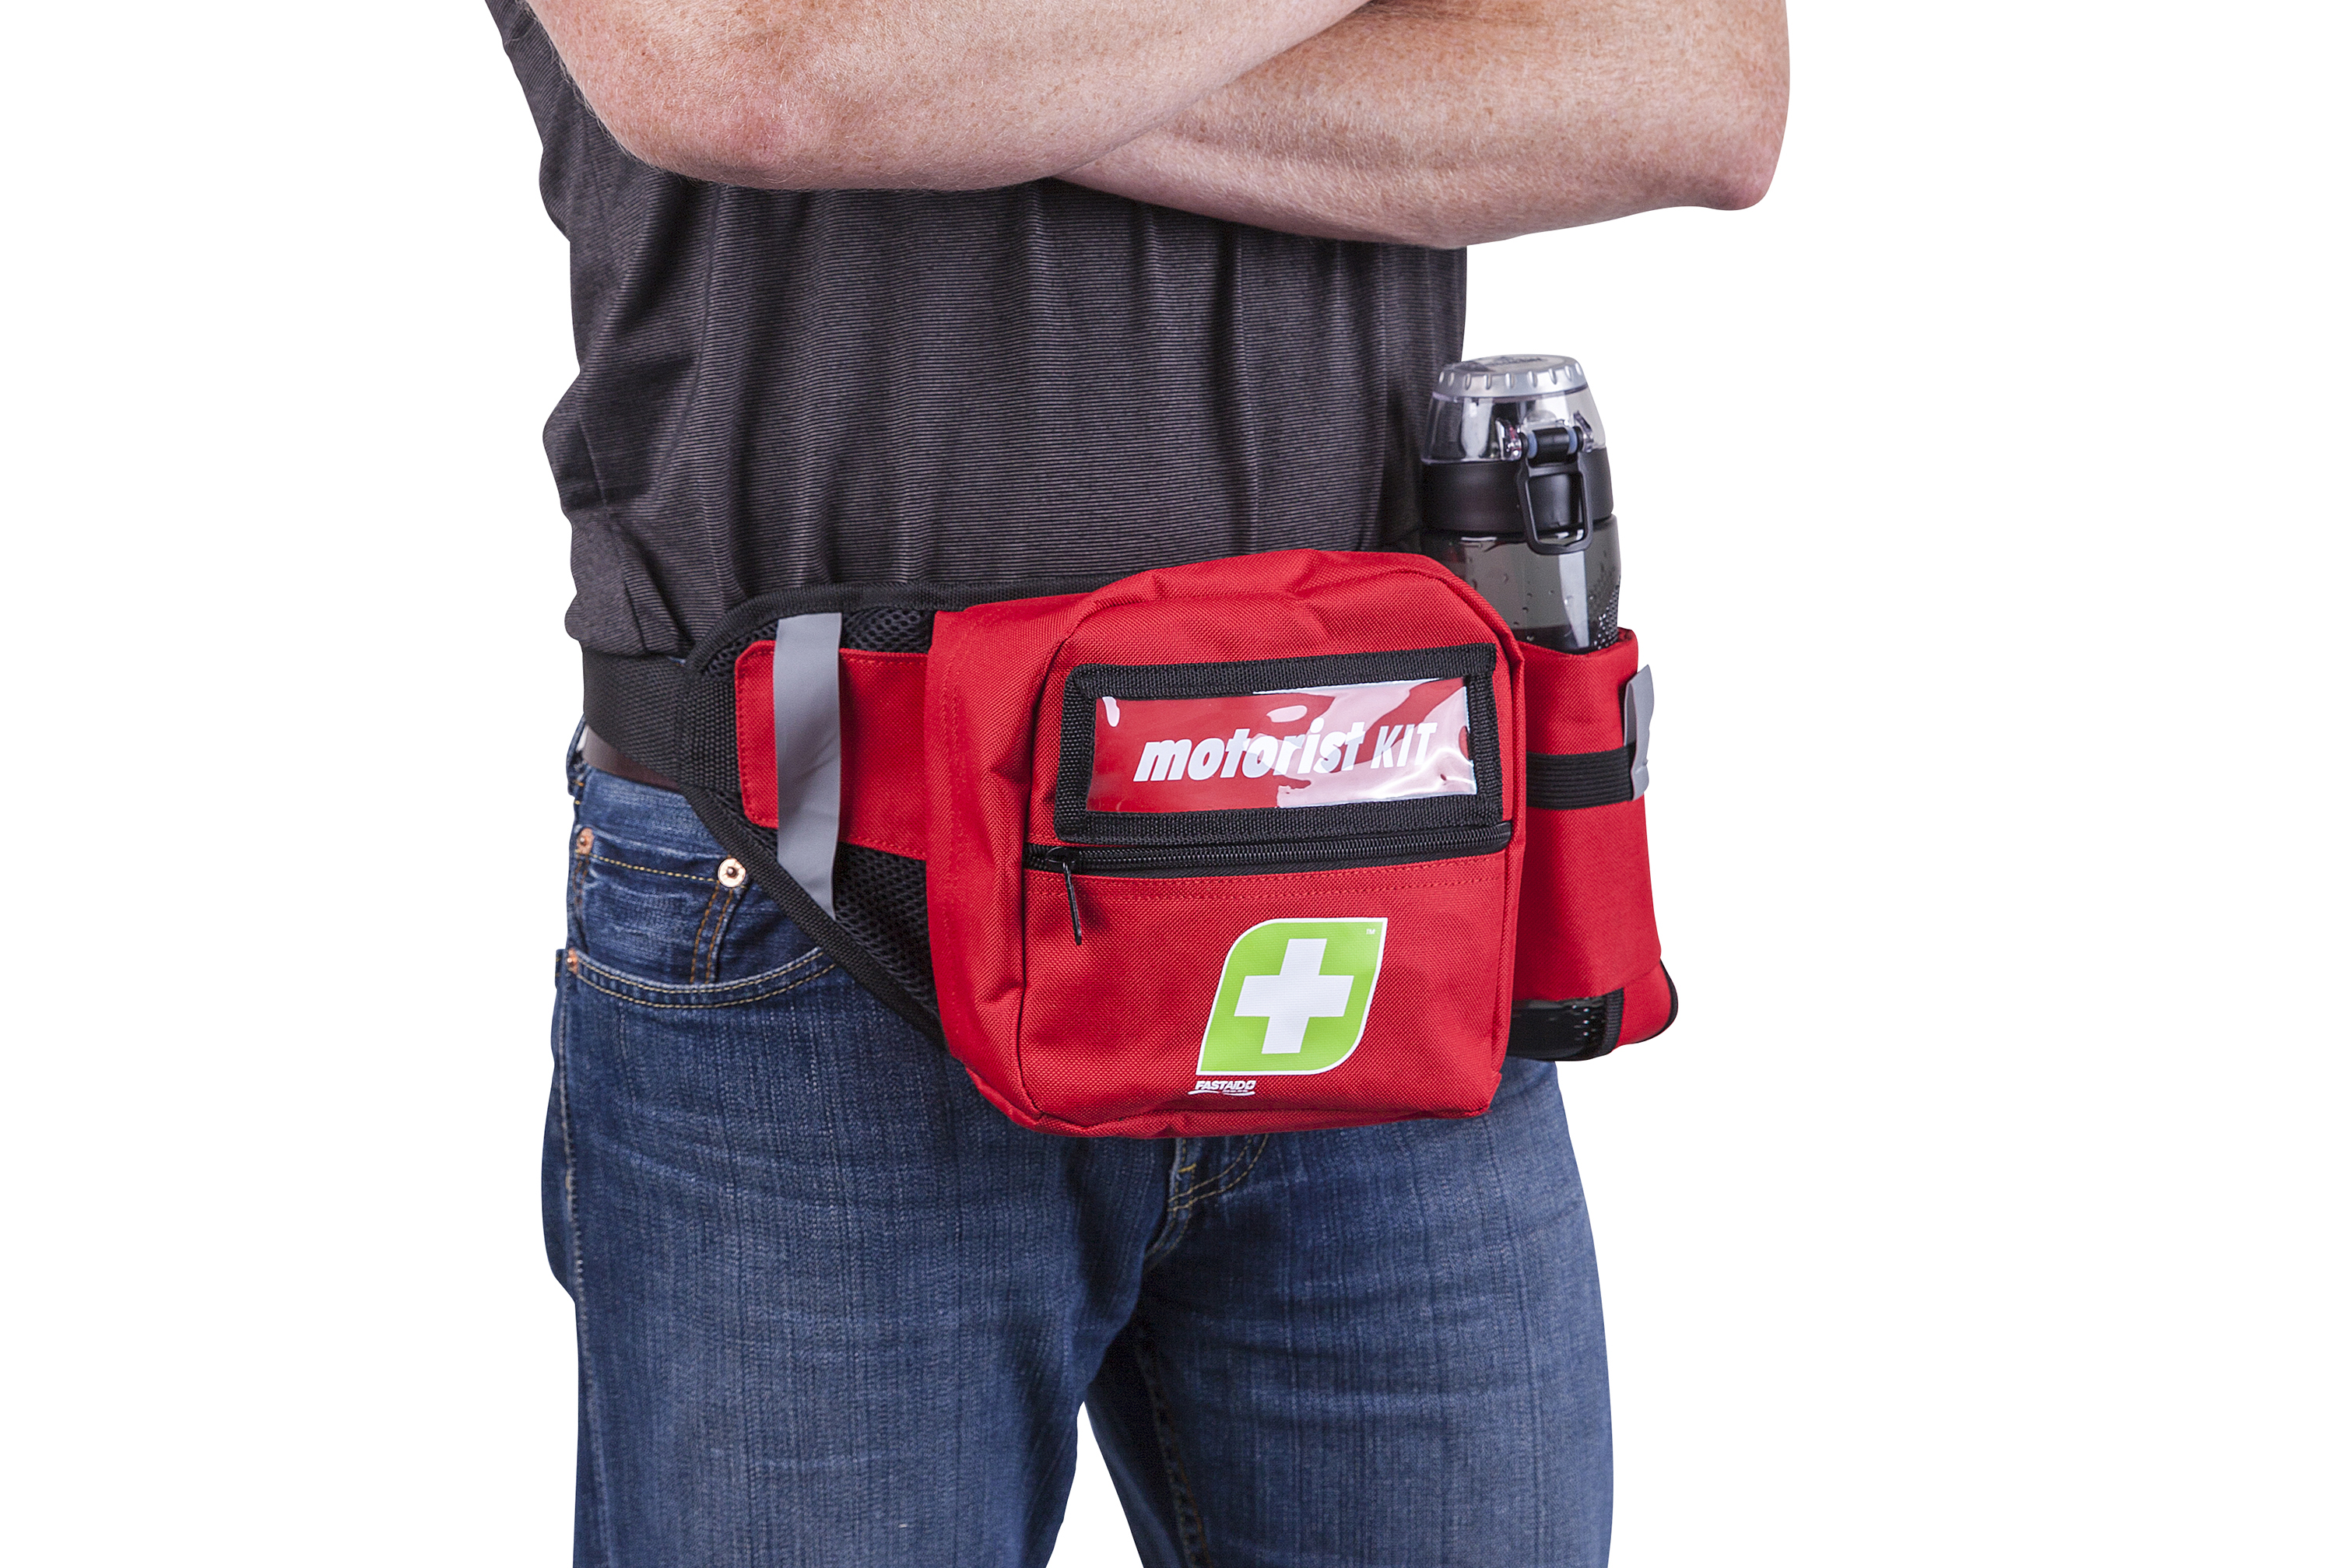 First Aid Kit | Bum Bag- ATI First Aid Supplies